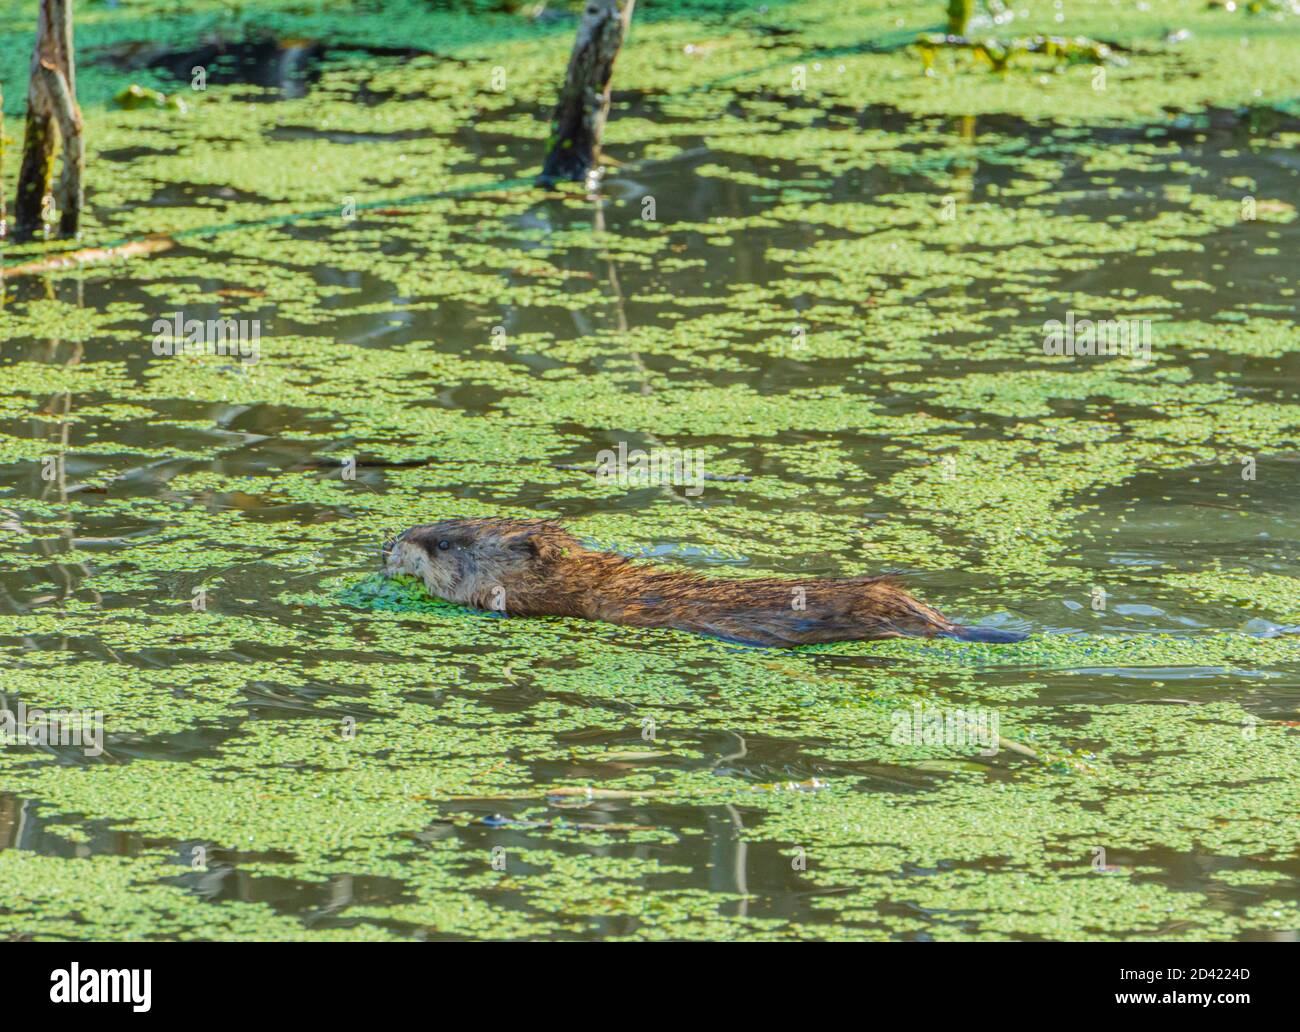 Muskrat nuoto (Ondatra zibethicus) in palude Beaver stagno tra verde duckweed sulla superficie dello stagno, Castle Rock Colorado Stati Uniti d'America. Foto scattata a ottobre 2020. Foto Stock